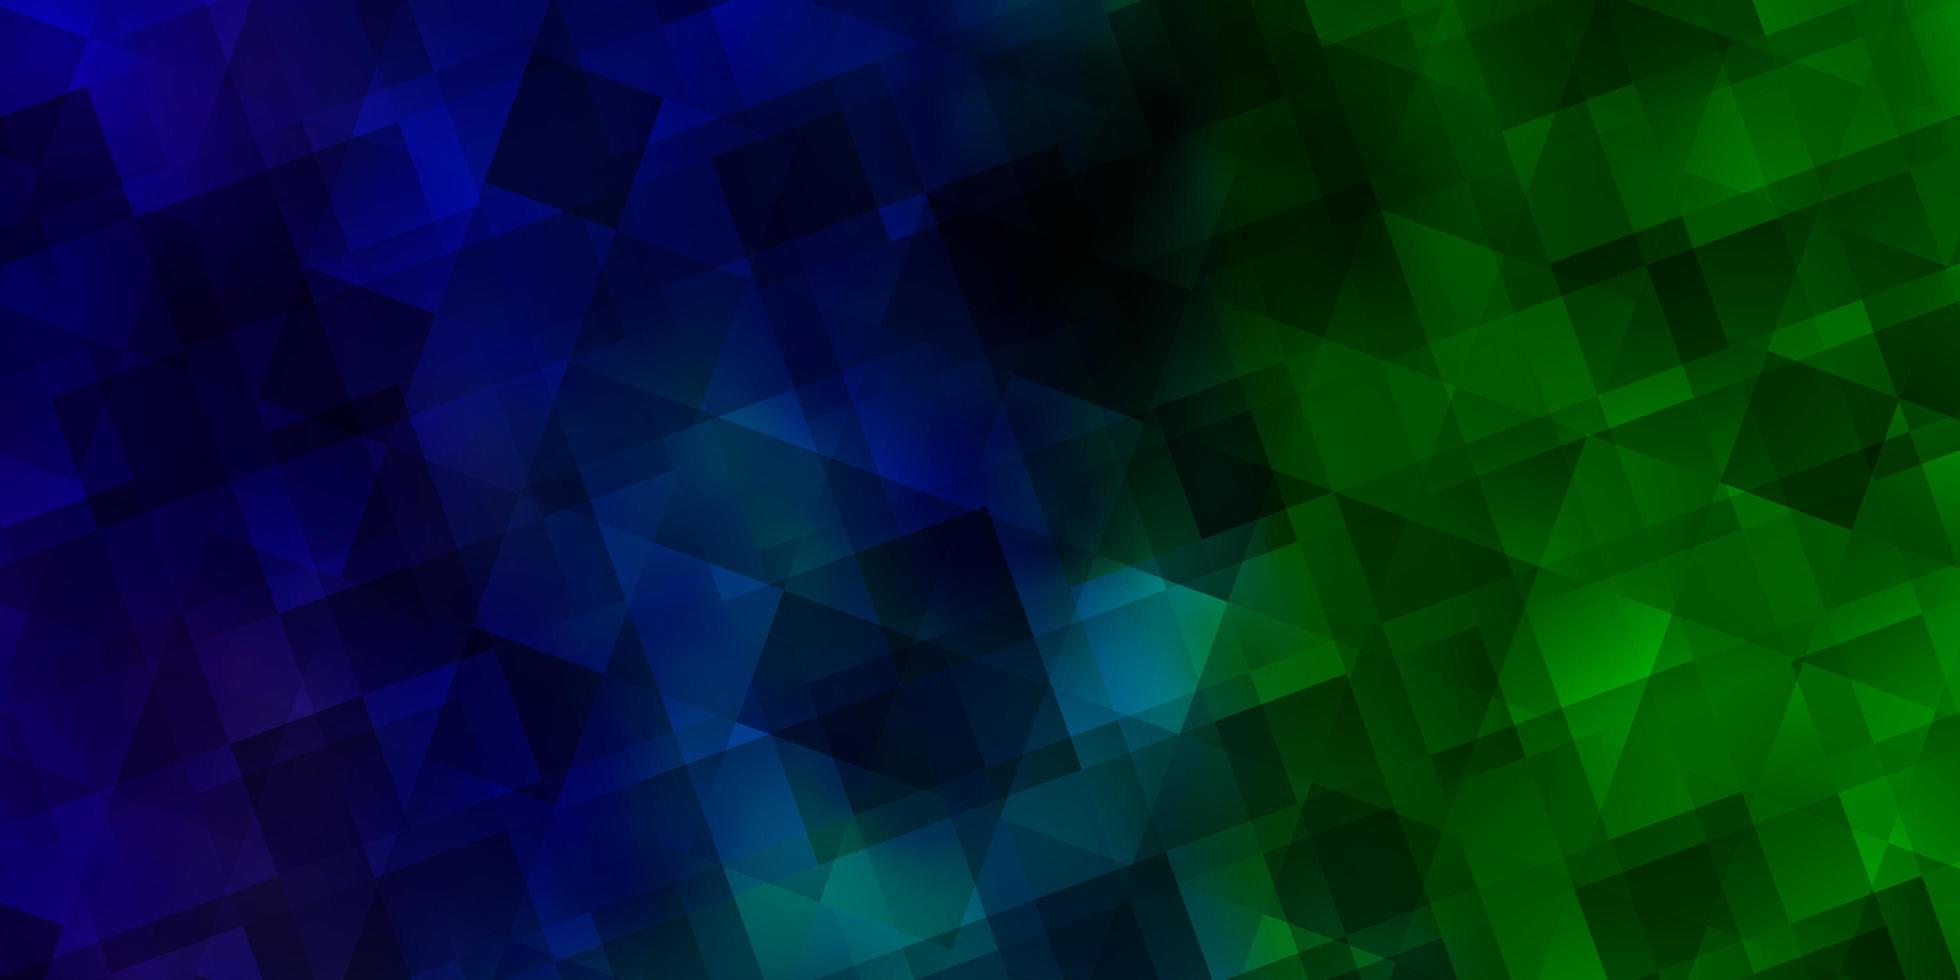 sfondo vettoriale azzurro, verde con stile poligonale.